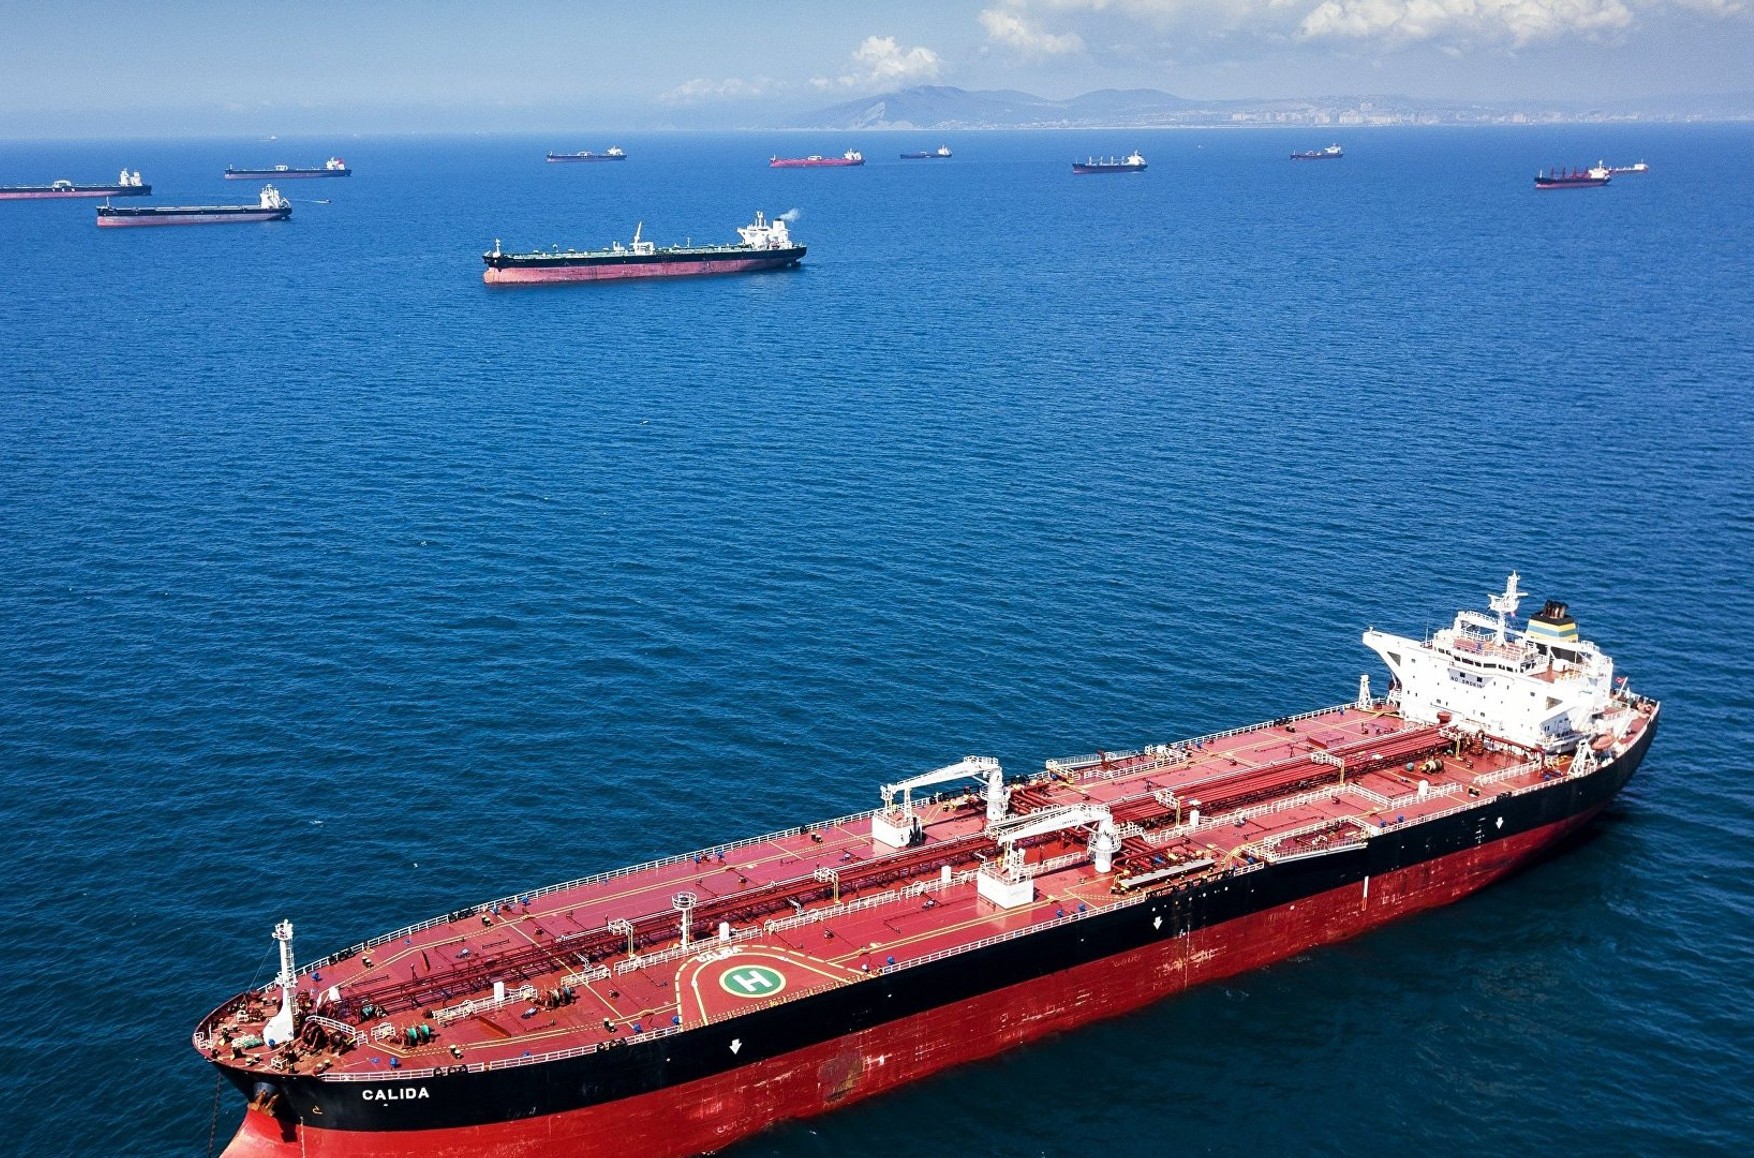 В море из-за санкций застряли танкеры с российской нефтью. Объем неразгруженной в портах нефти вырос в 3 раза от довоенного уровня